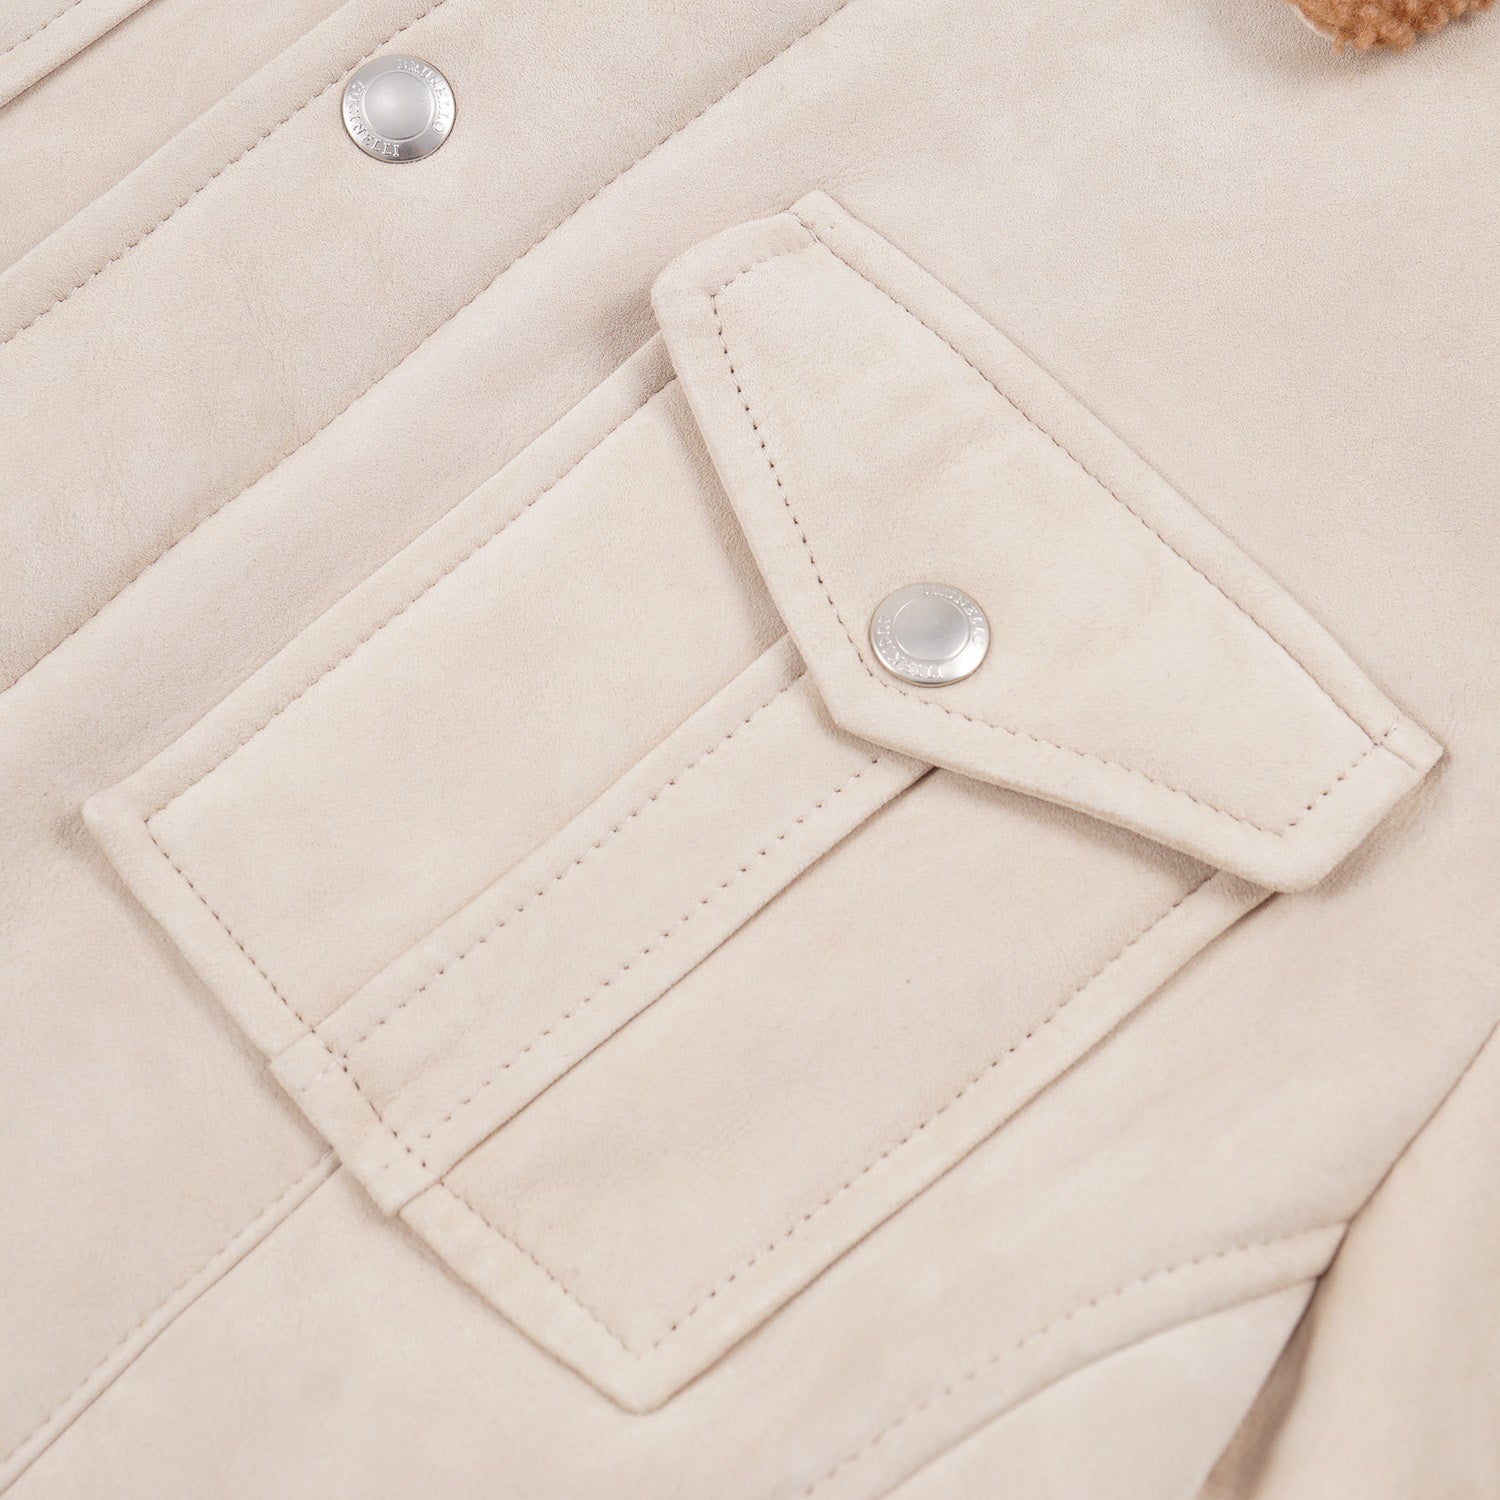 Brunello Cucinelli Shearling Leather Field Jacket - Top Shelf Apparel